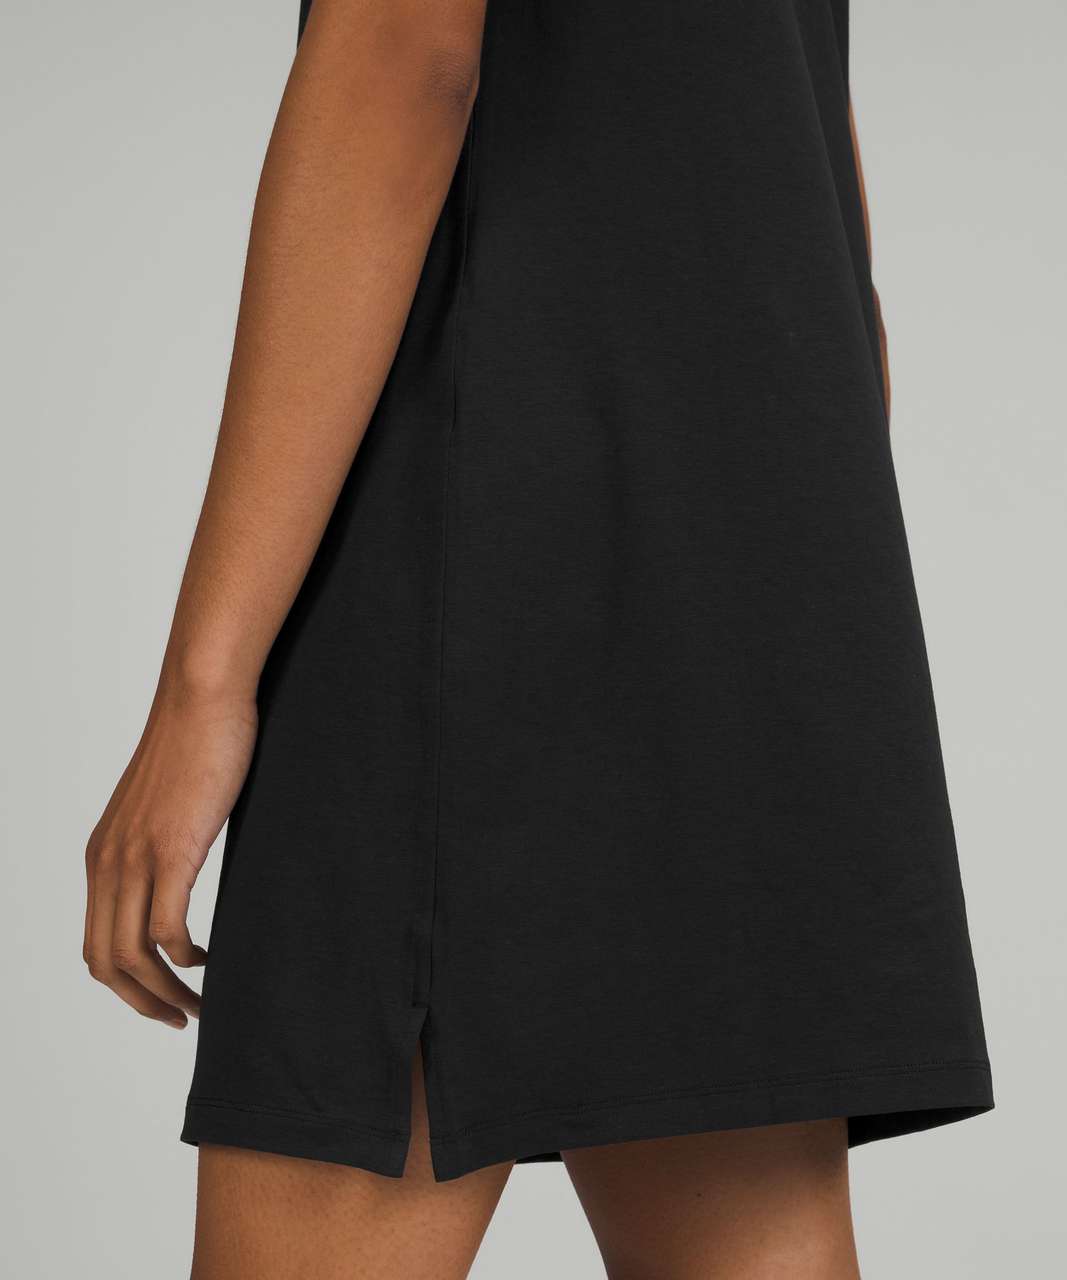 Lululemon Classic-Fit Cotton-Blend Dress - Black